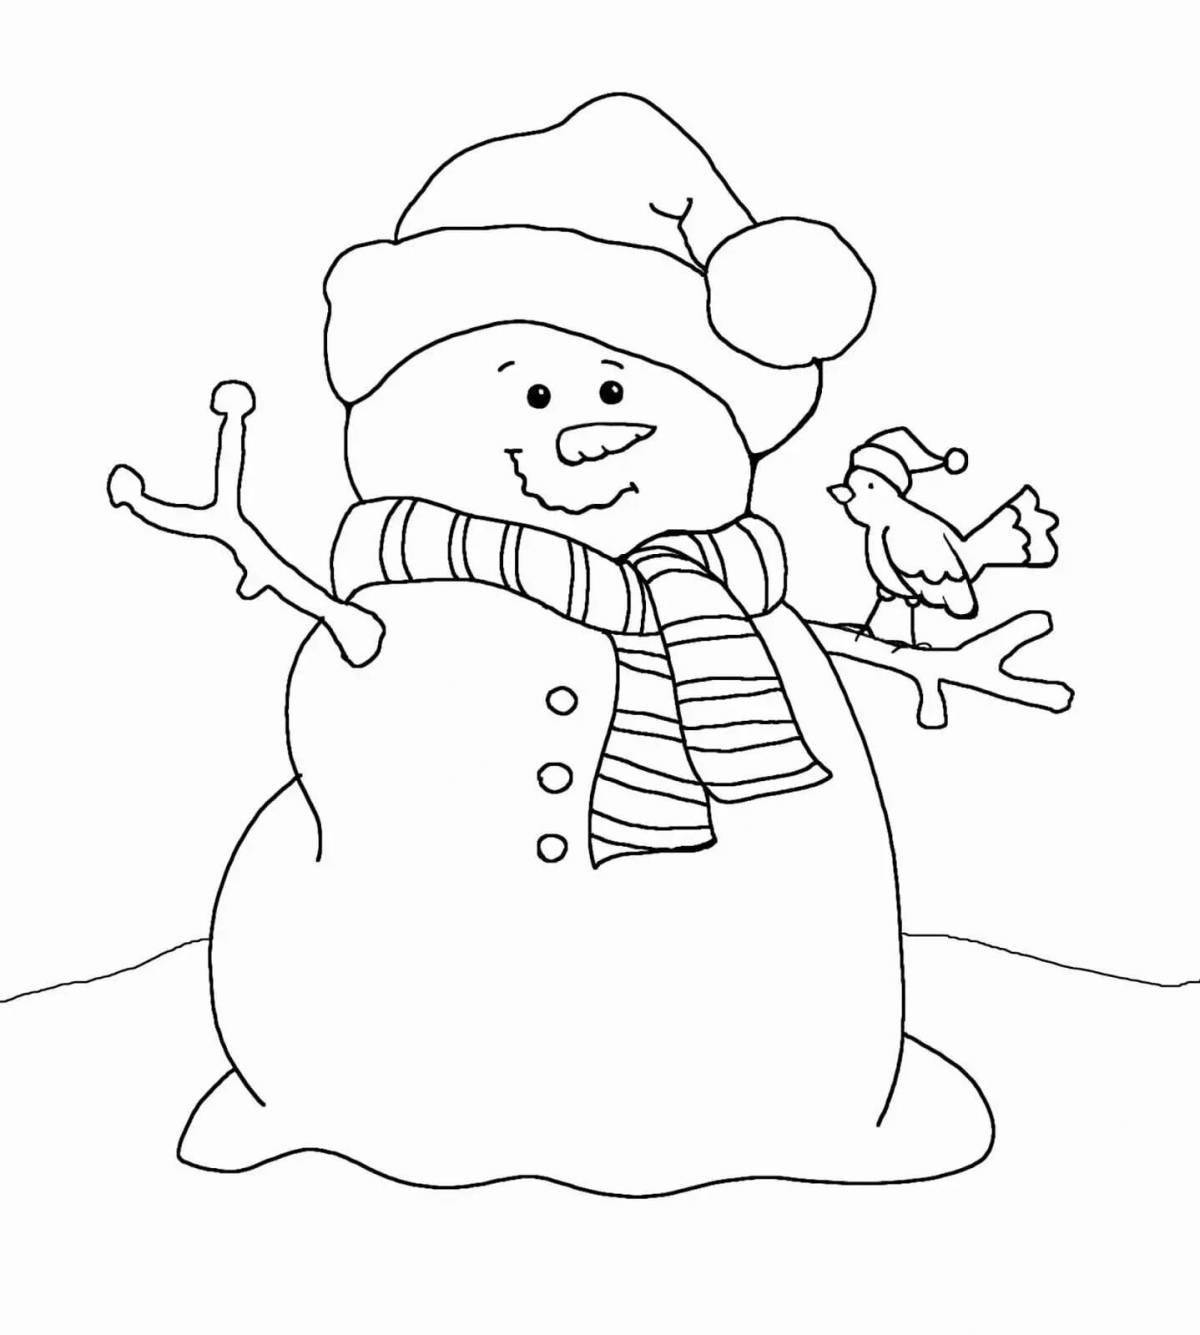 Сверкающая раскраска симпатичный снеговик